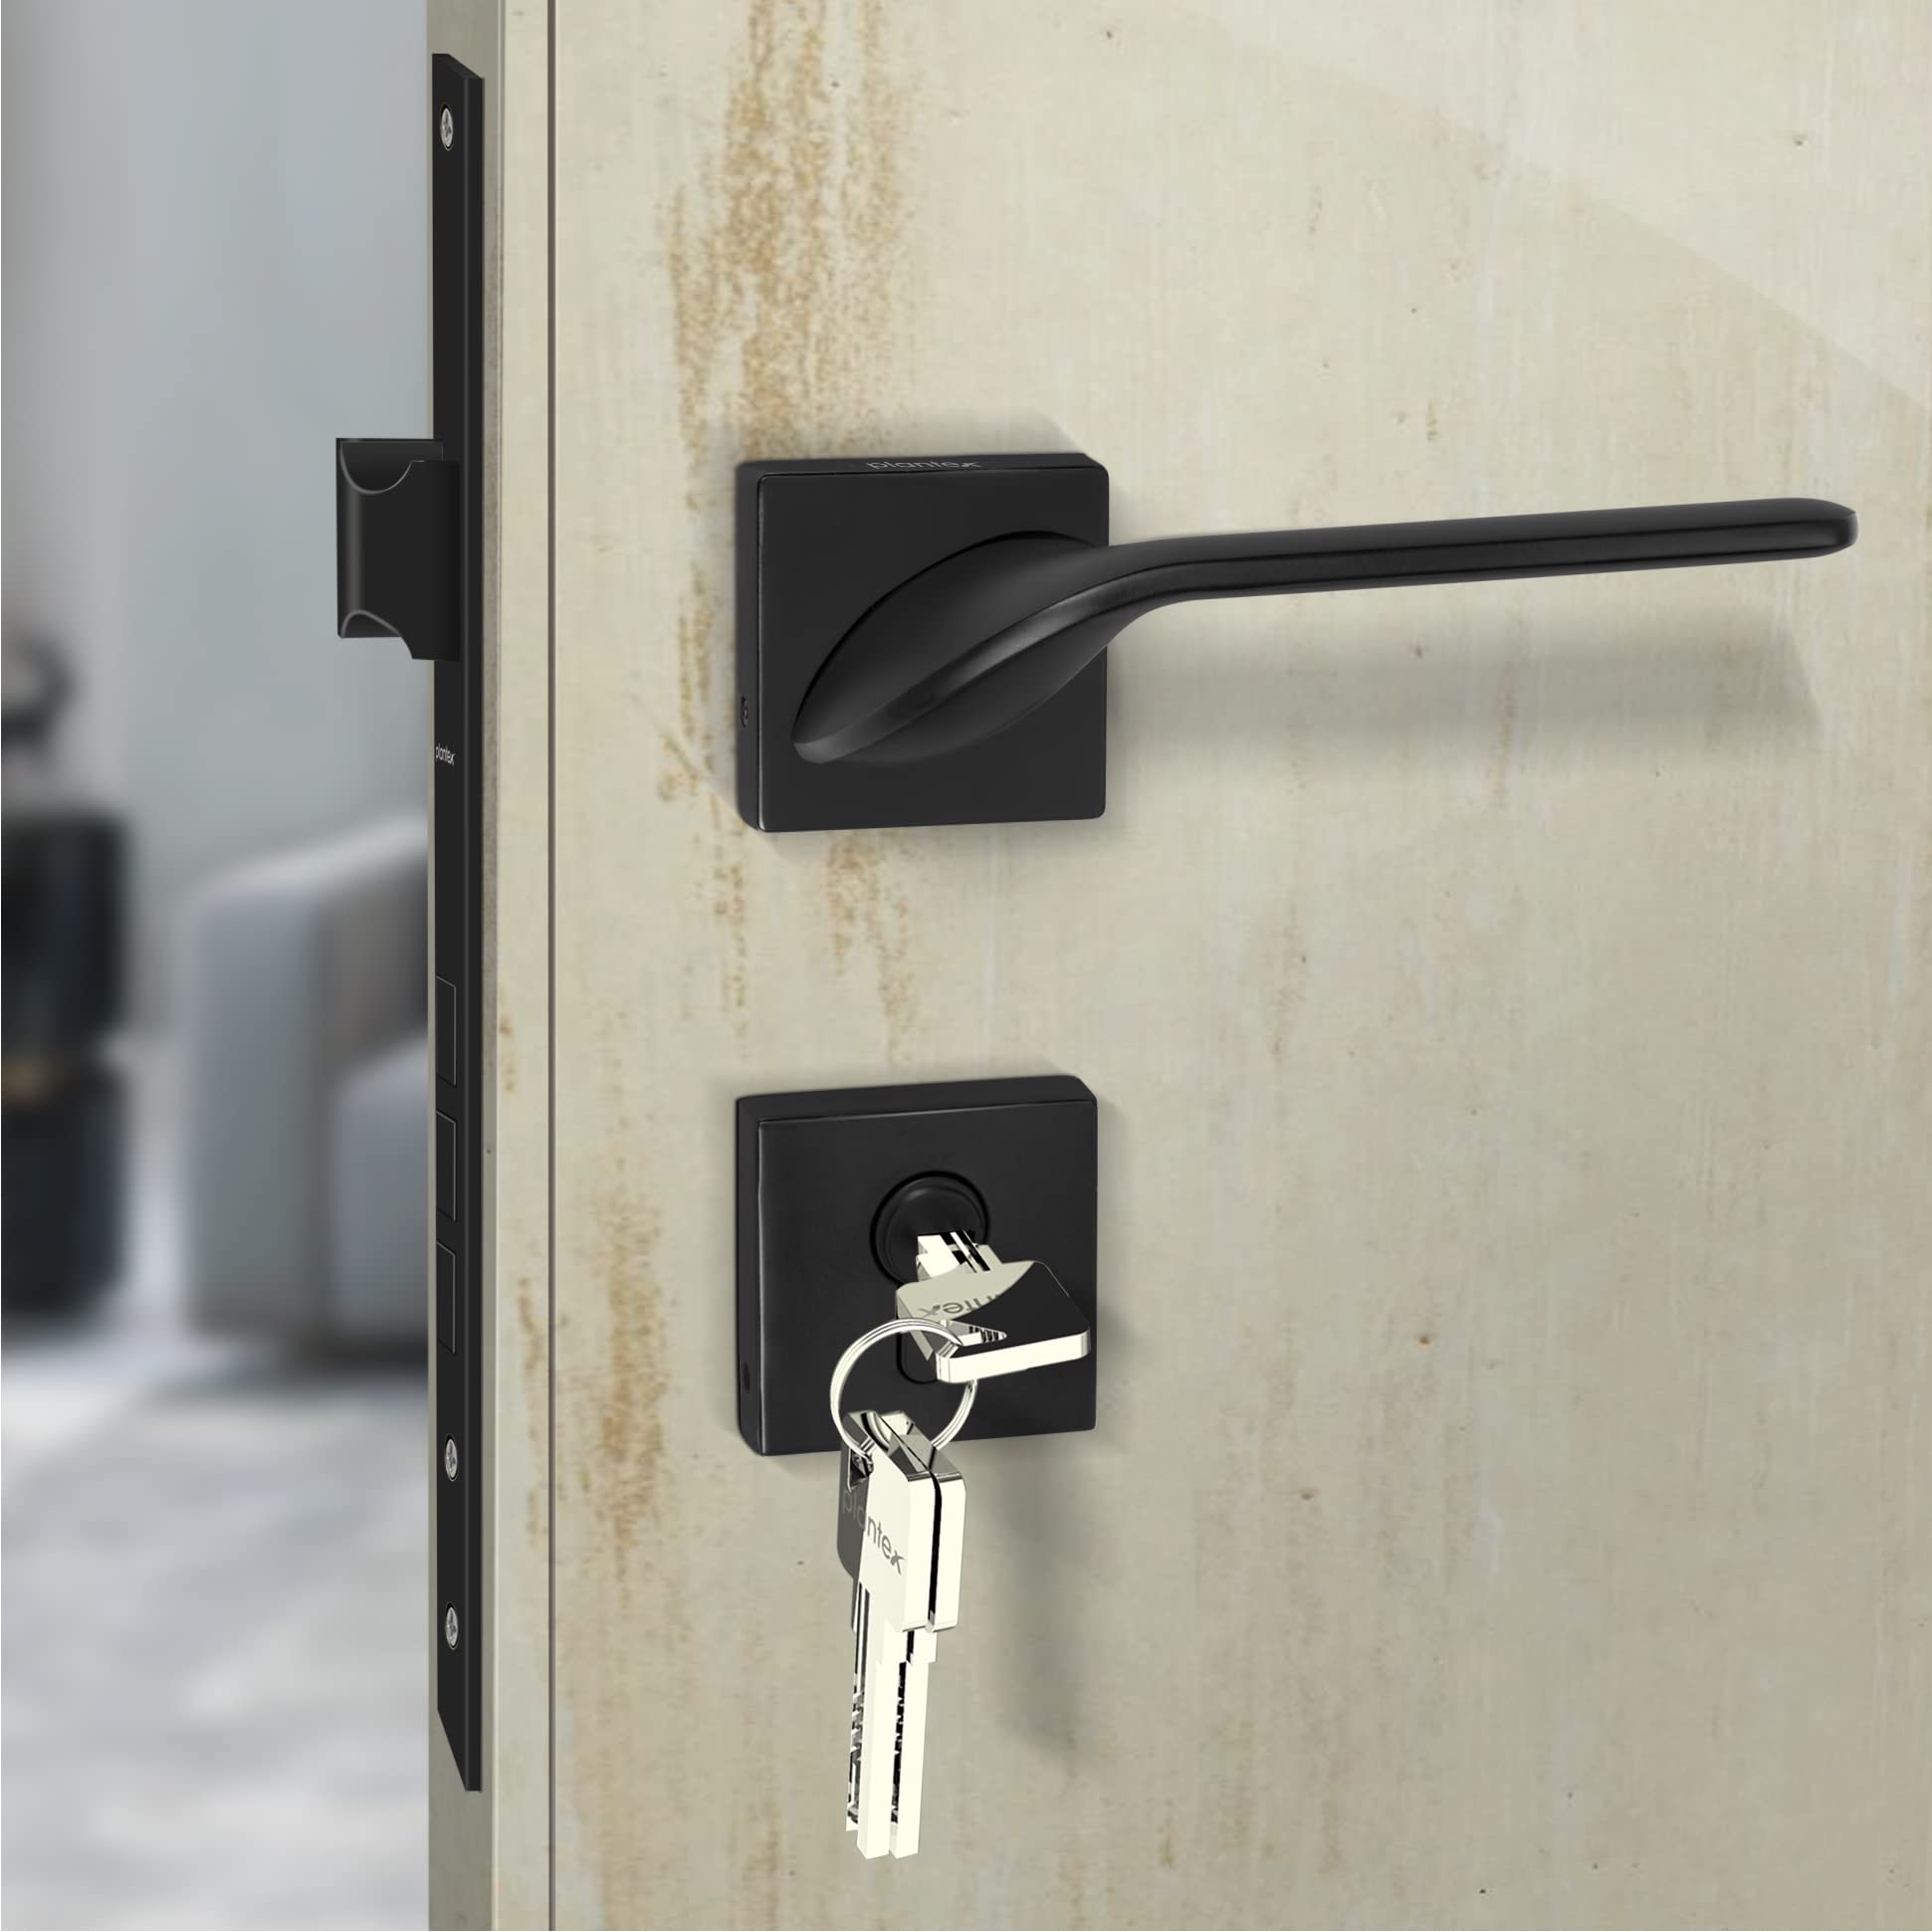 Plantex Heavy Duty Door Lock-Main Door Lock Set with 3 Keys/Mortise Door Lock for Home/Office/Hotel – (7058 – Black)